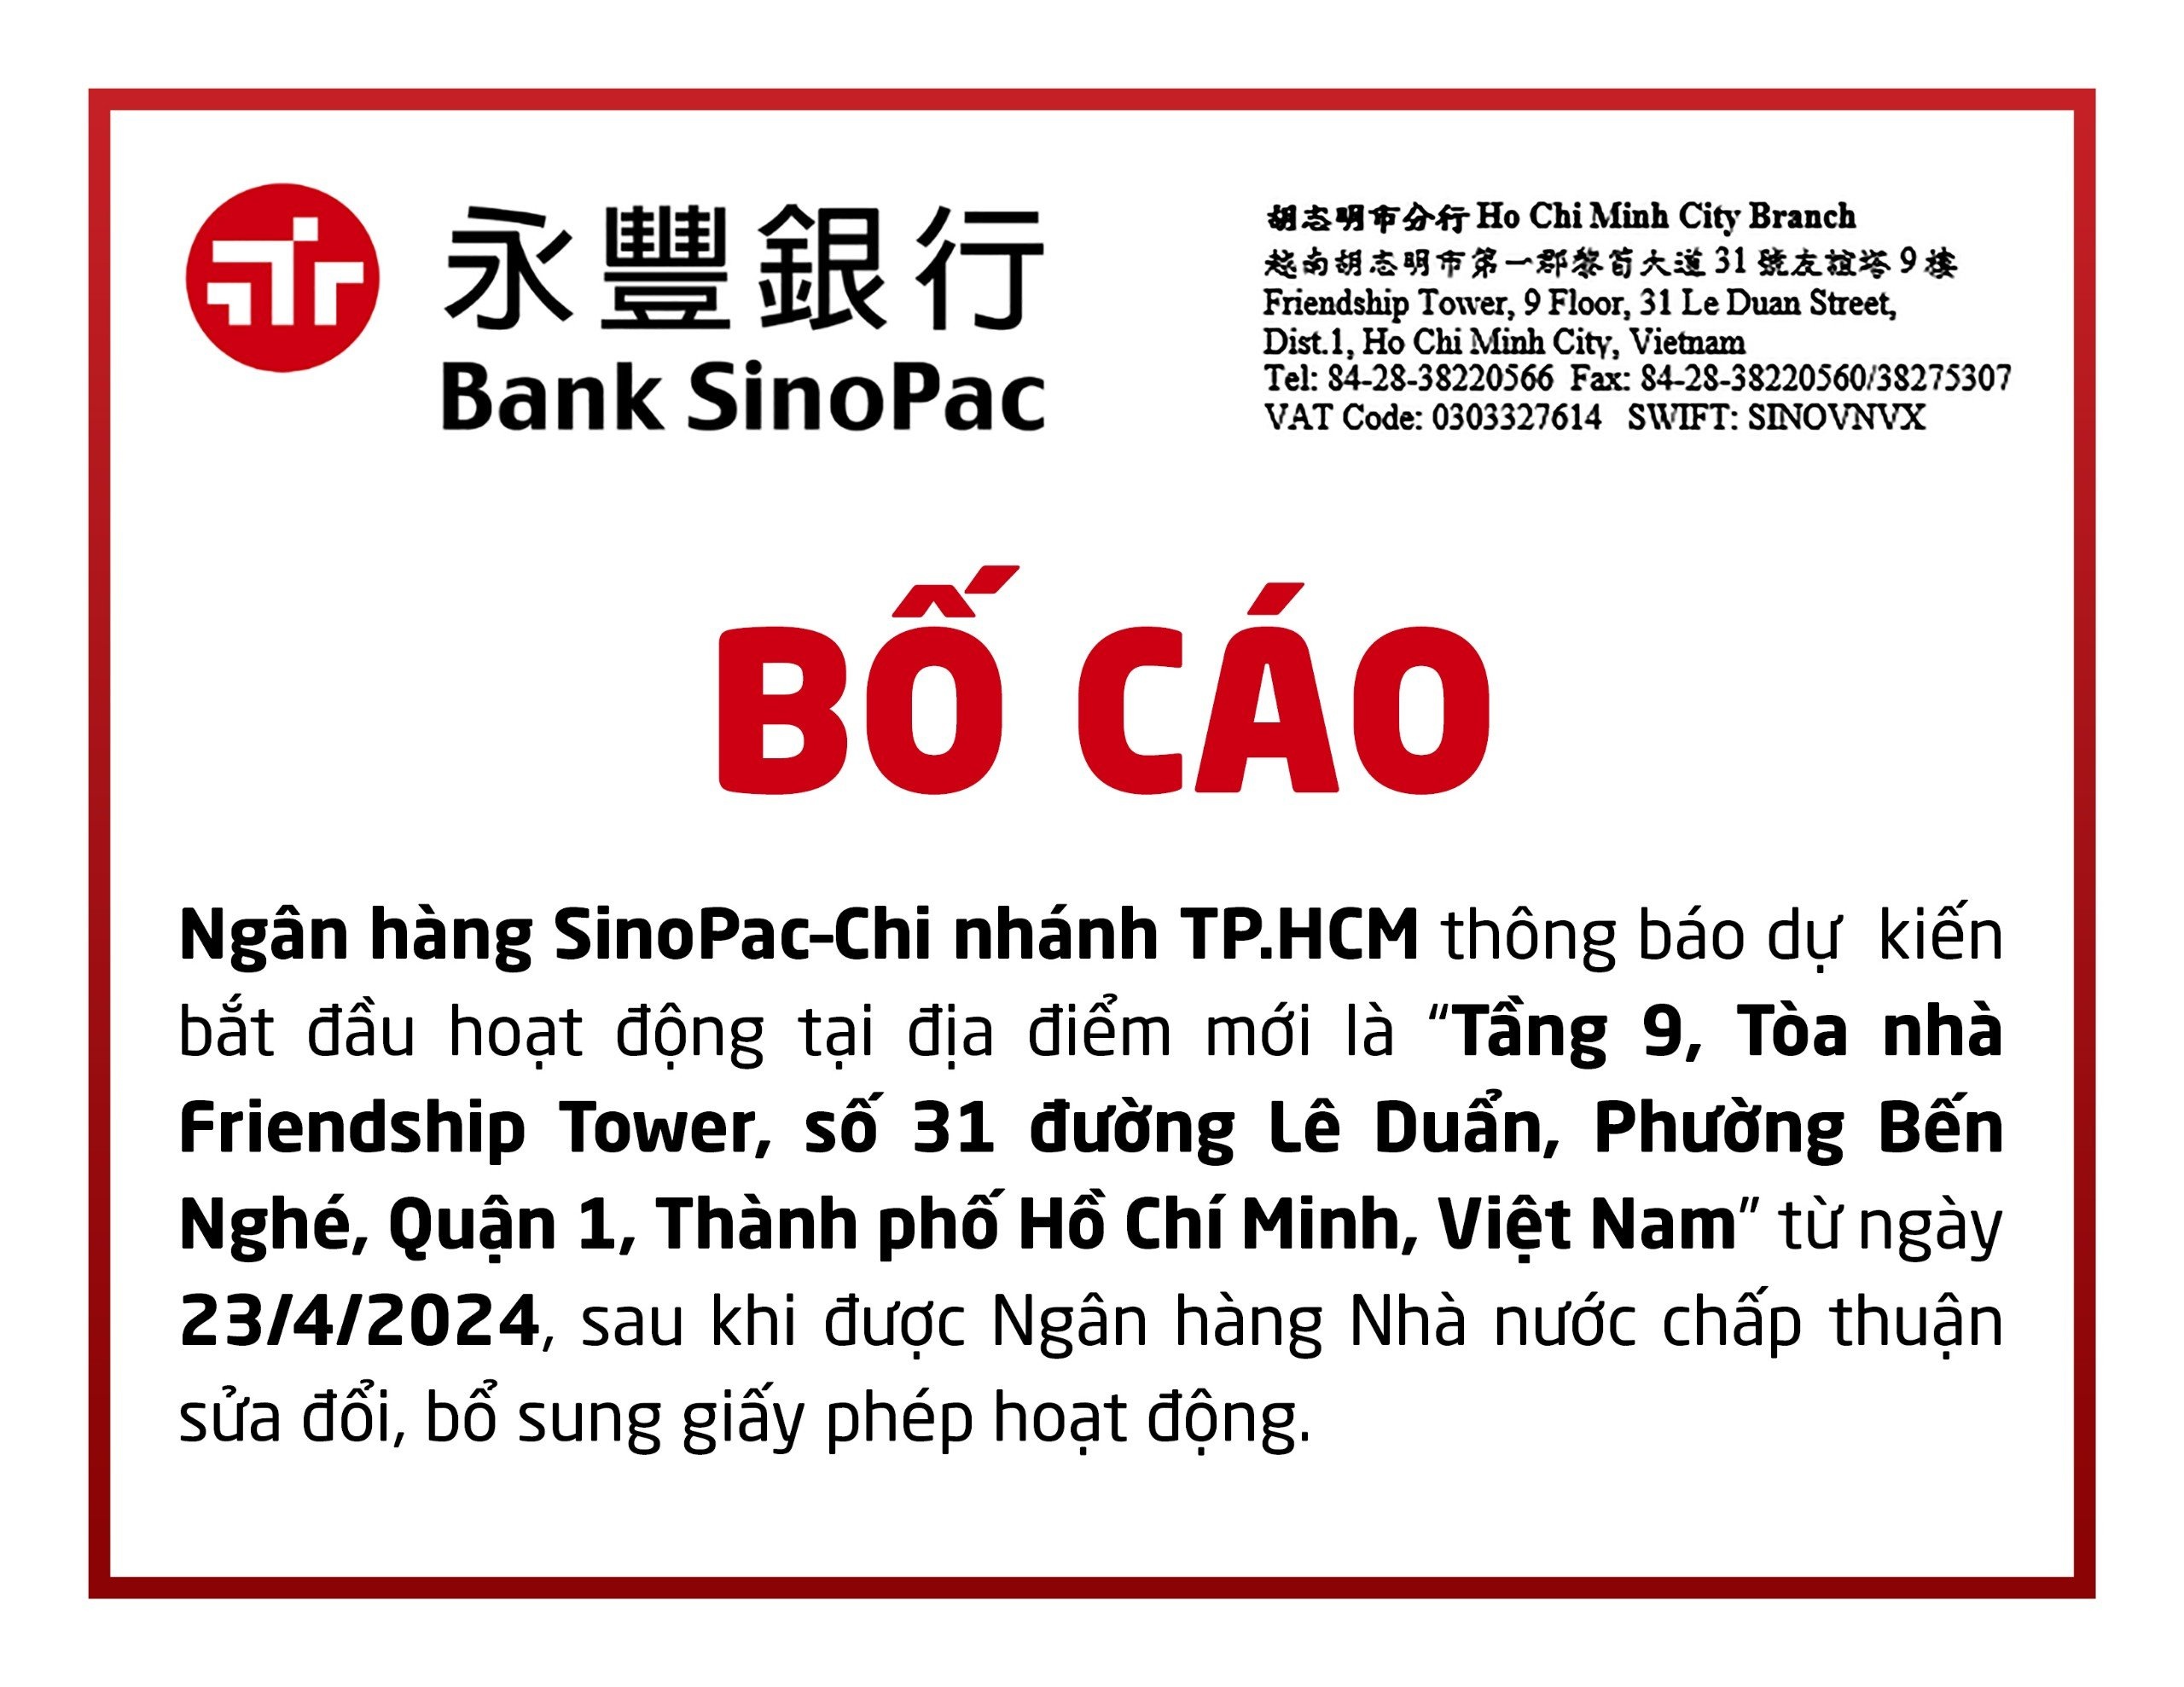 Ngân hàng SinoPac Chi nhánh TP.HCM thay đổi địa chỉ trụ sở